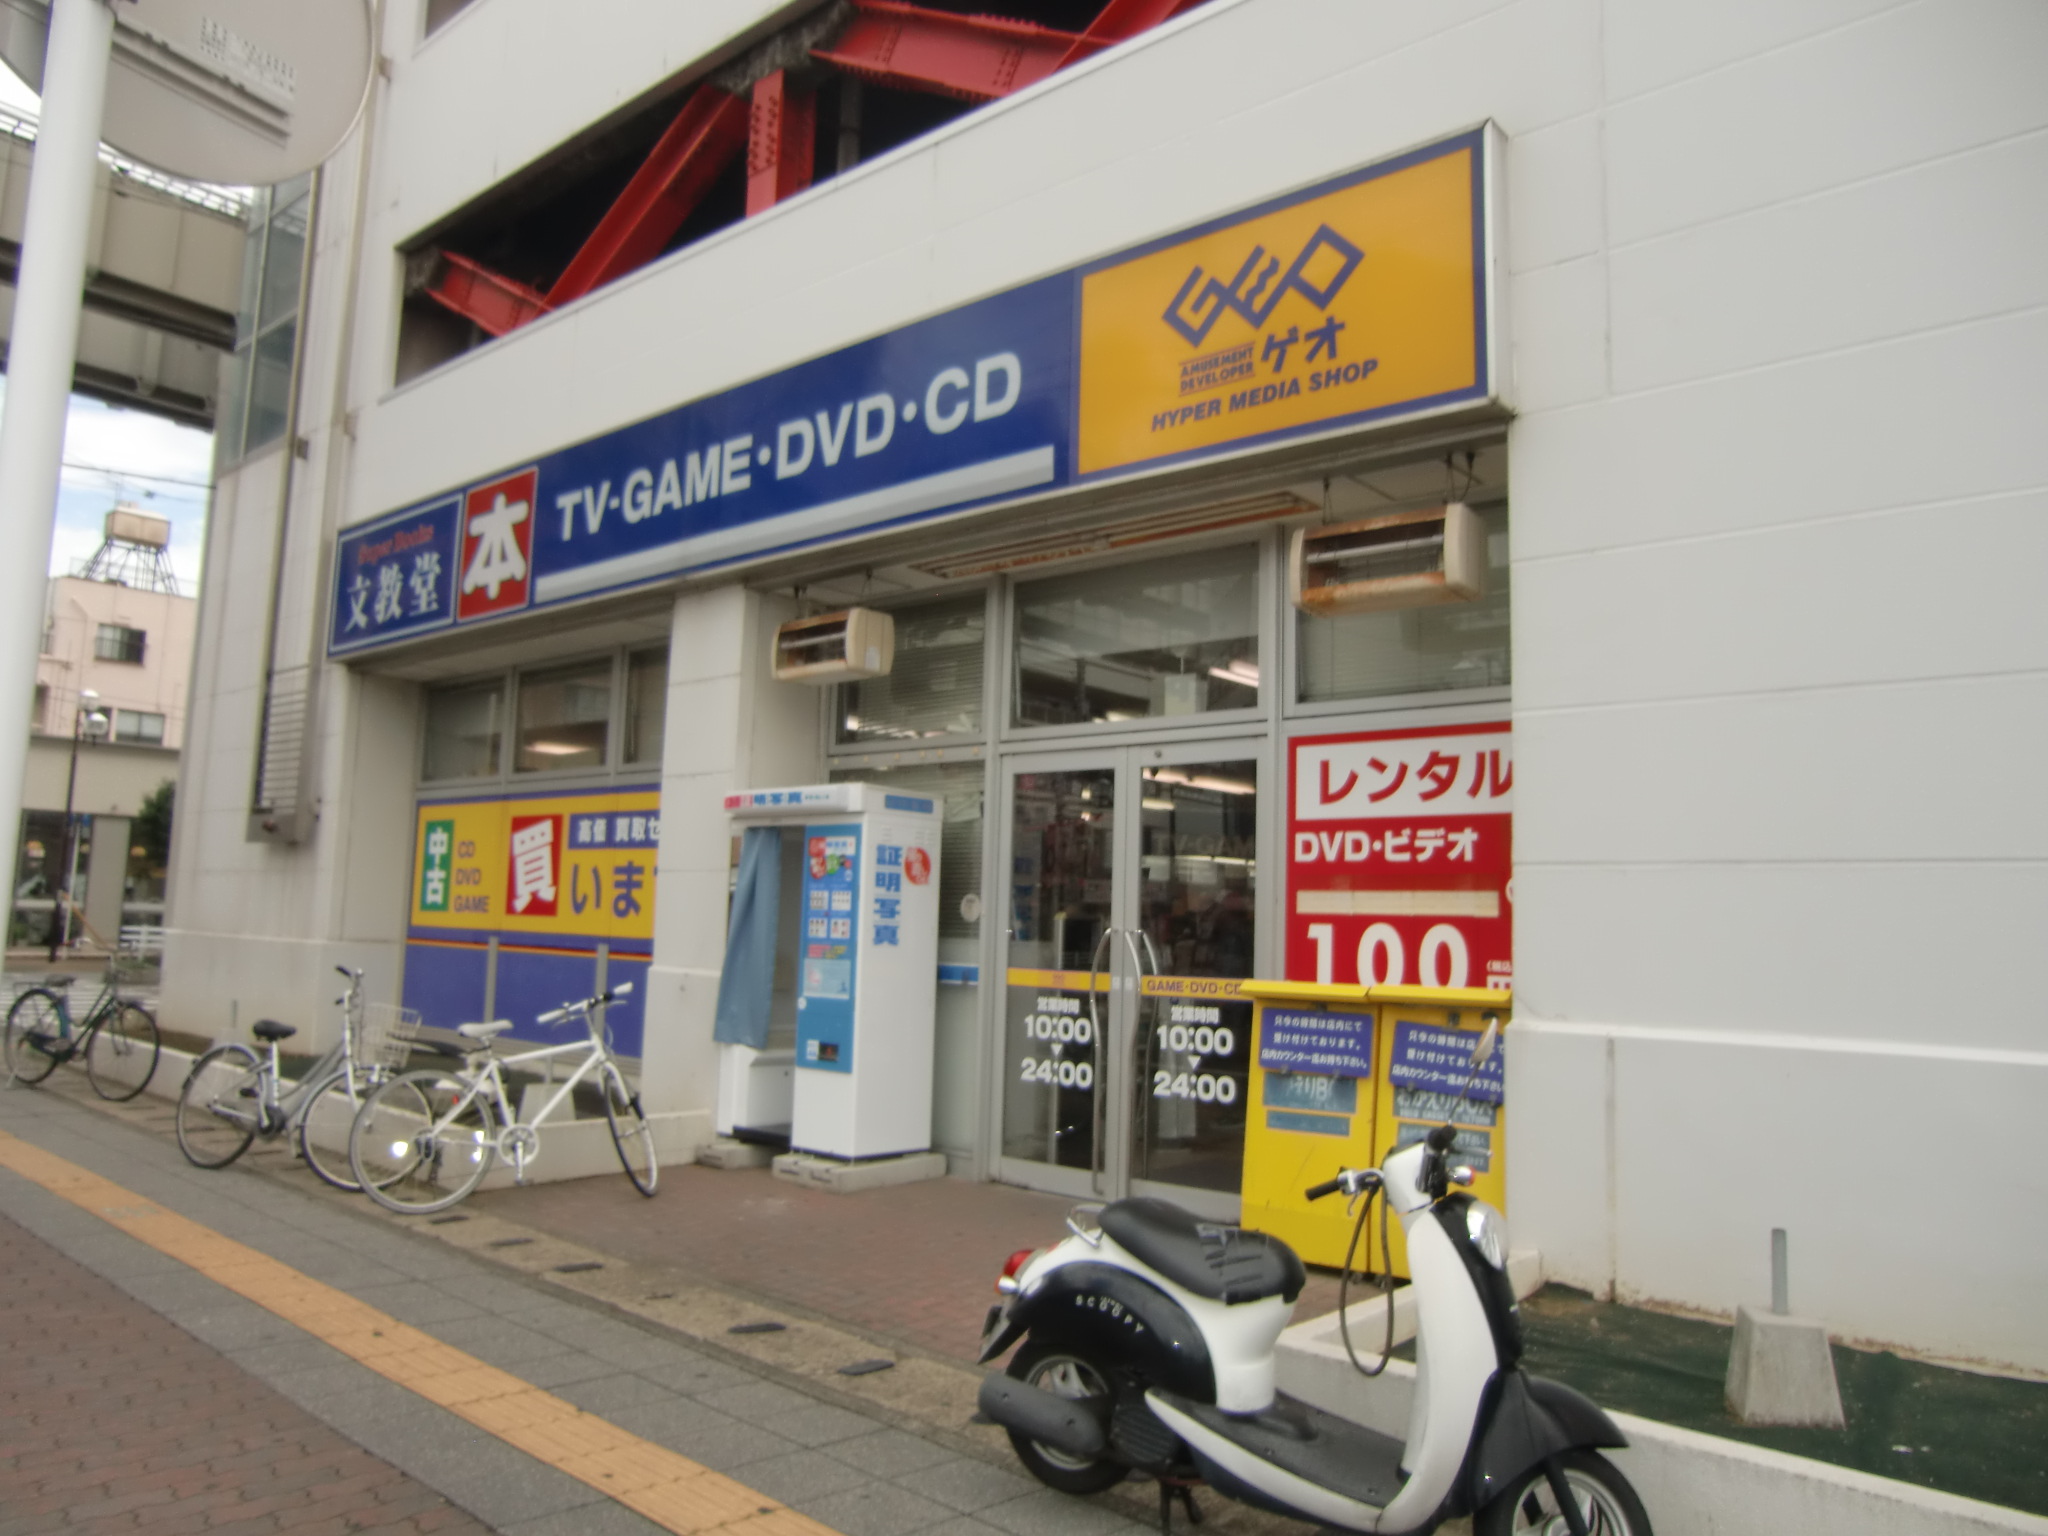 Rental video. GEO Bunkyodo Tsuga shop 920m up (video rental)